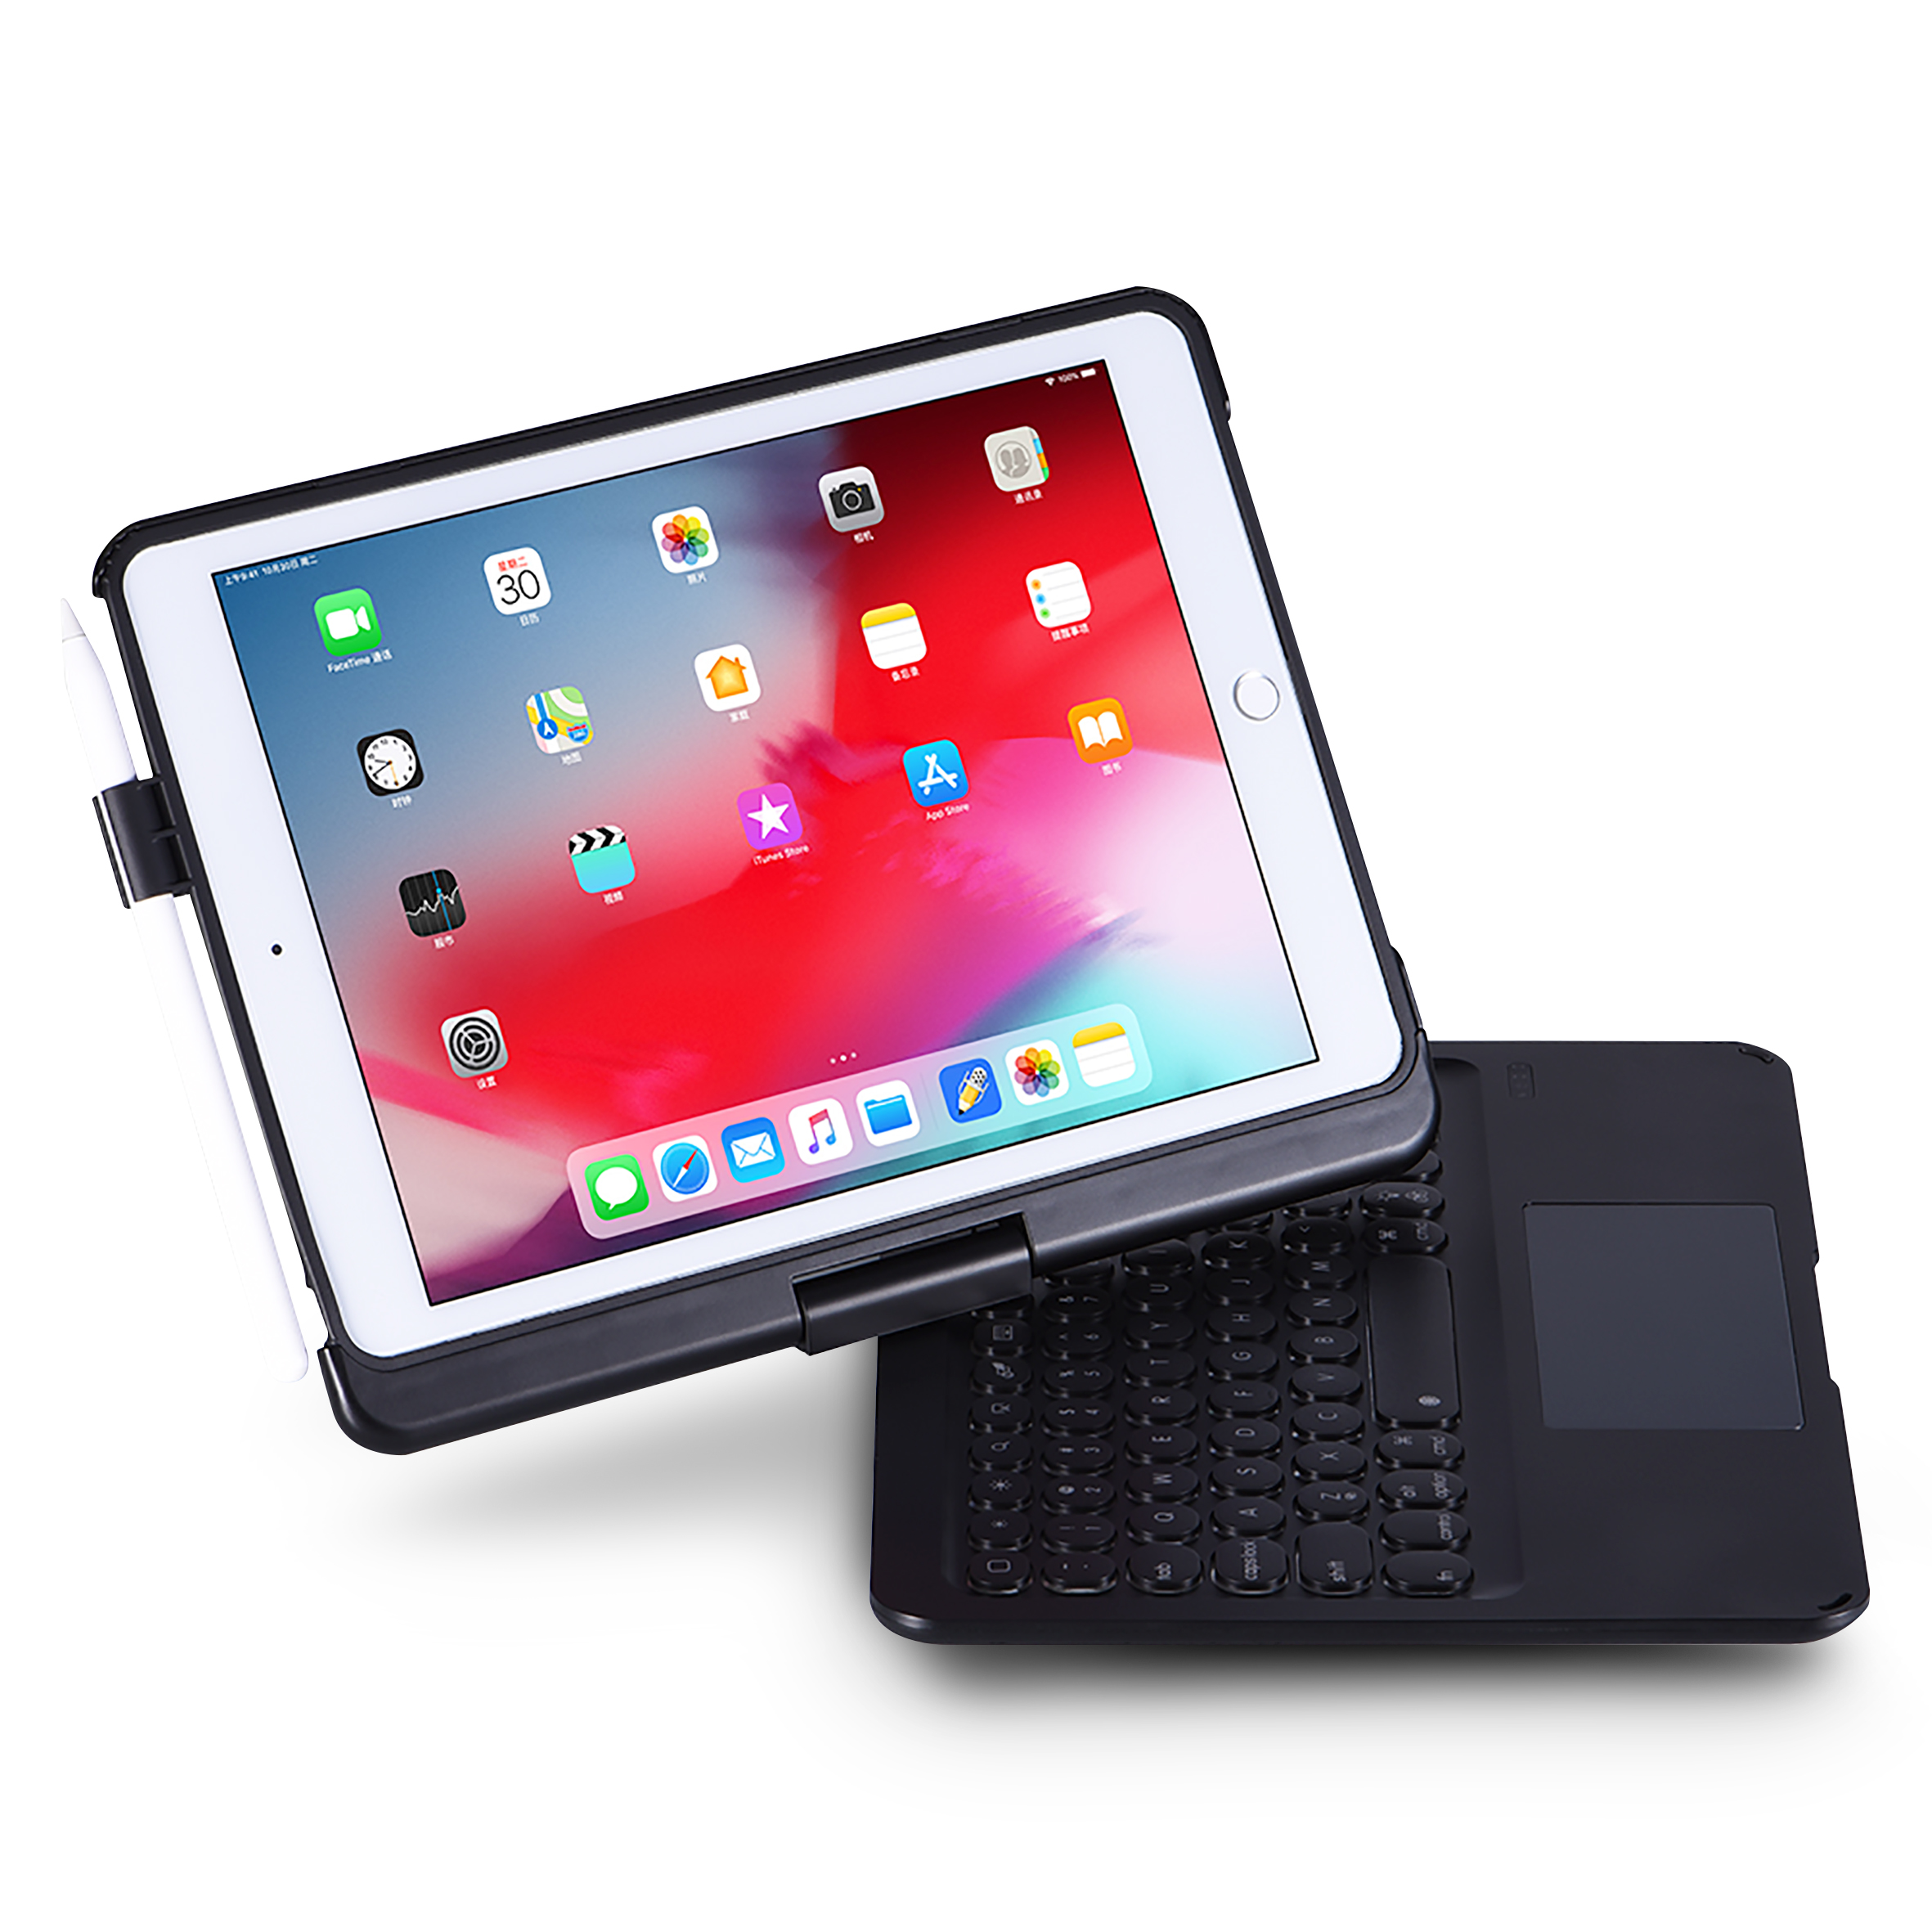 Mini-clavier sans fil Bluetooth rechargeable pour IPad Mobile téléphone  Tablet PC